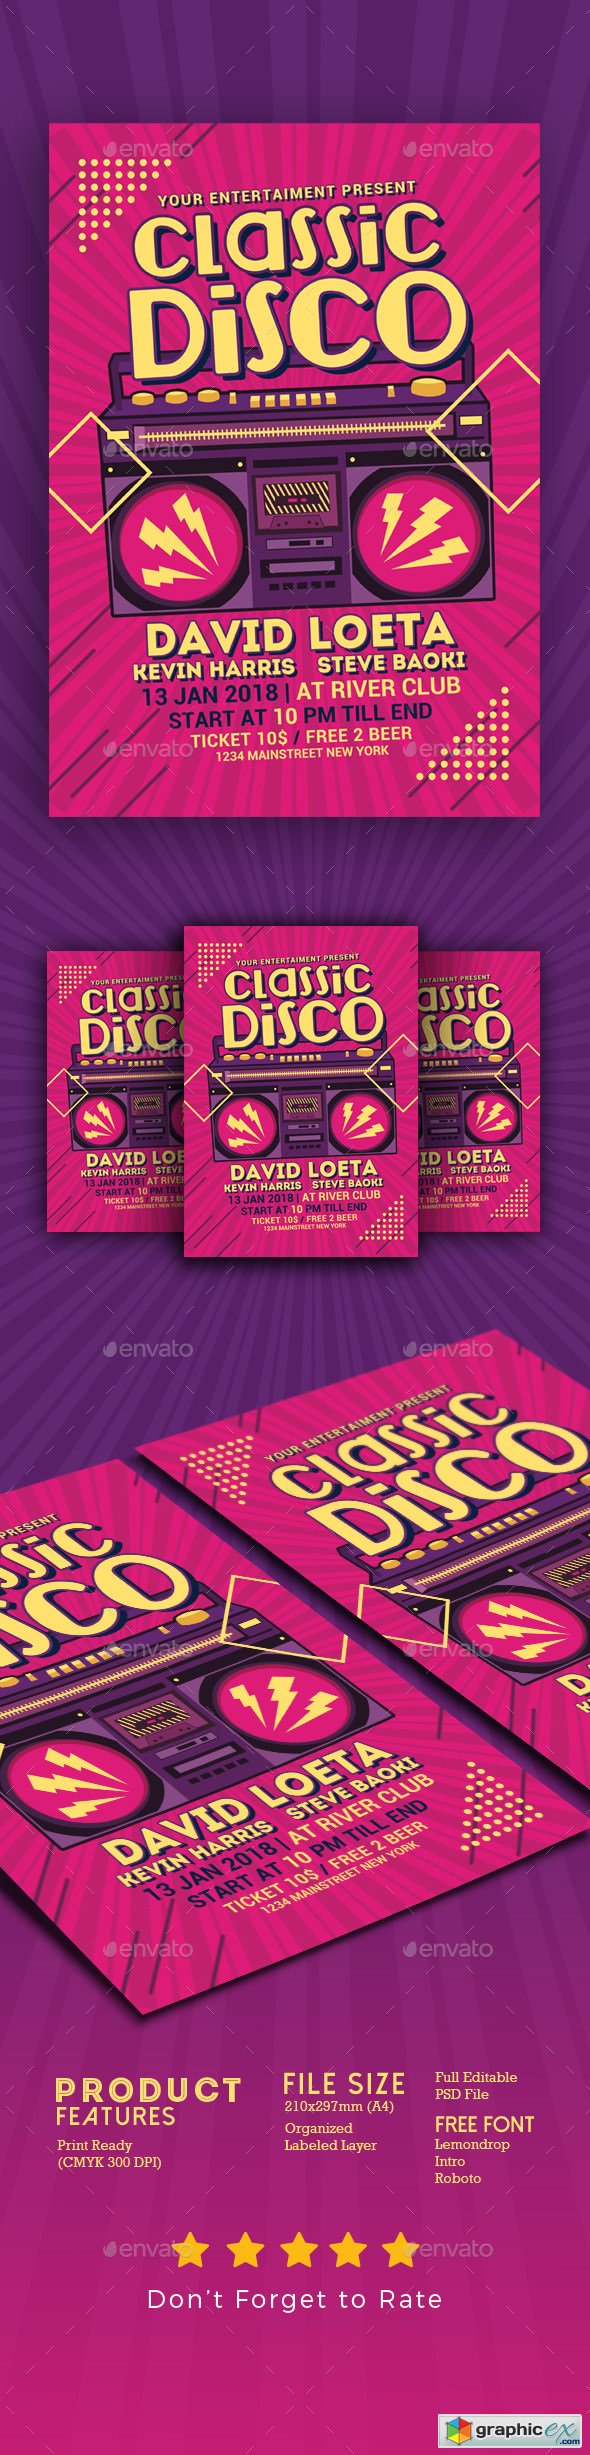 Classic Disco Radio Flyer